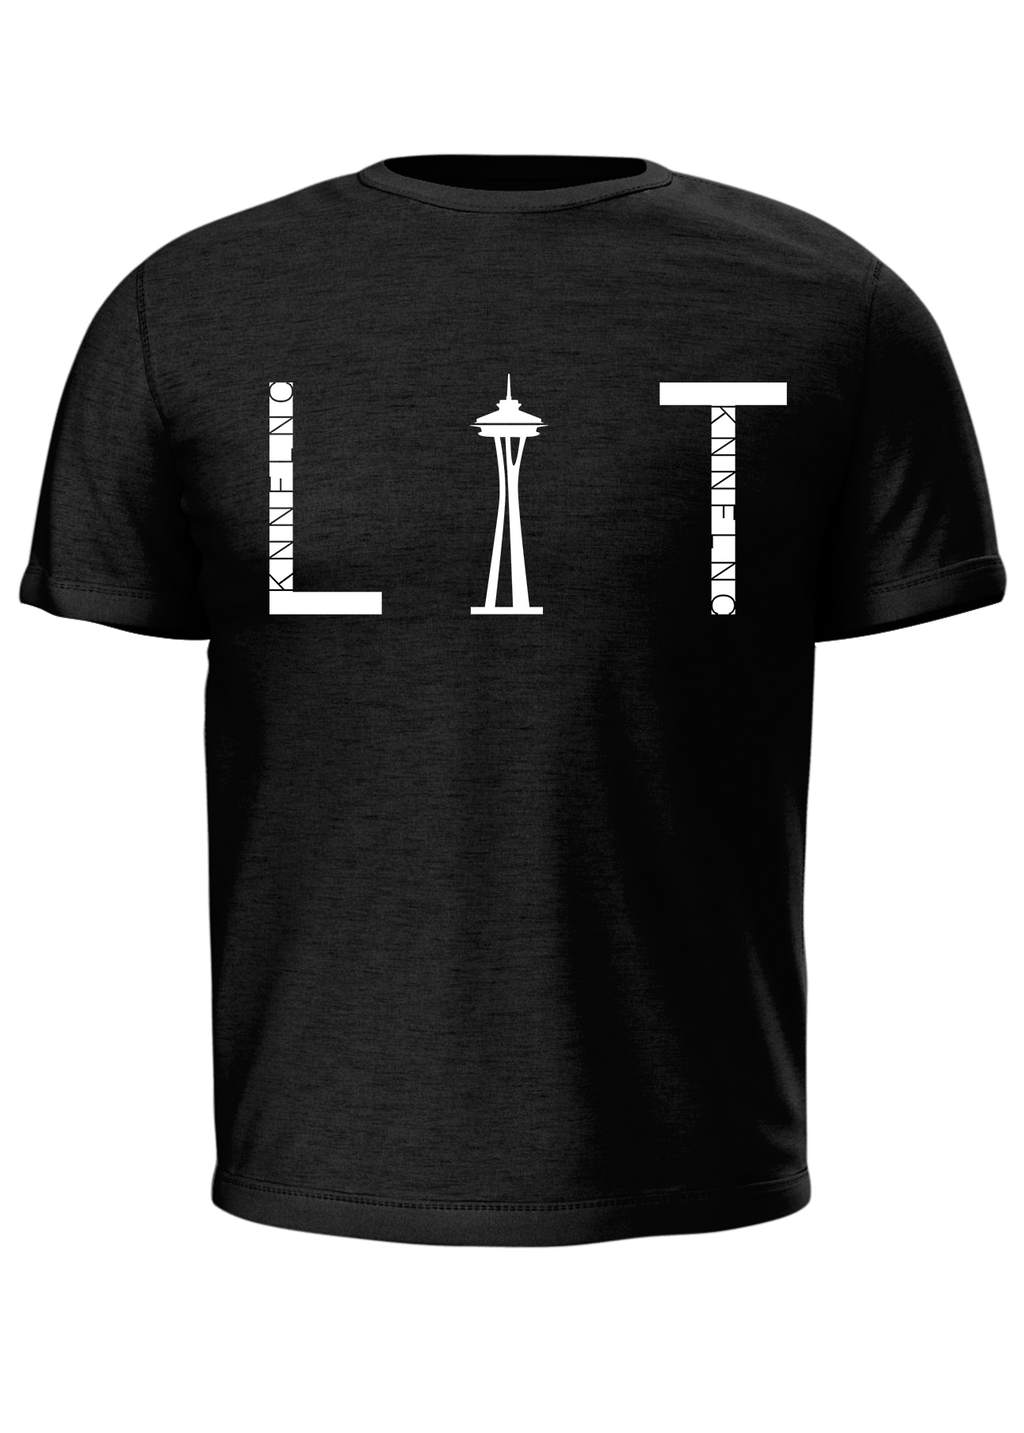 "LIT T-Shirt" by KNNFLNC. Vol. 1